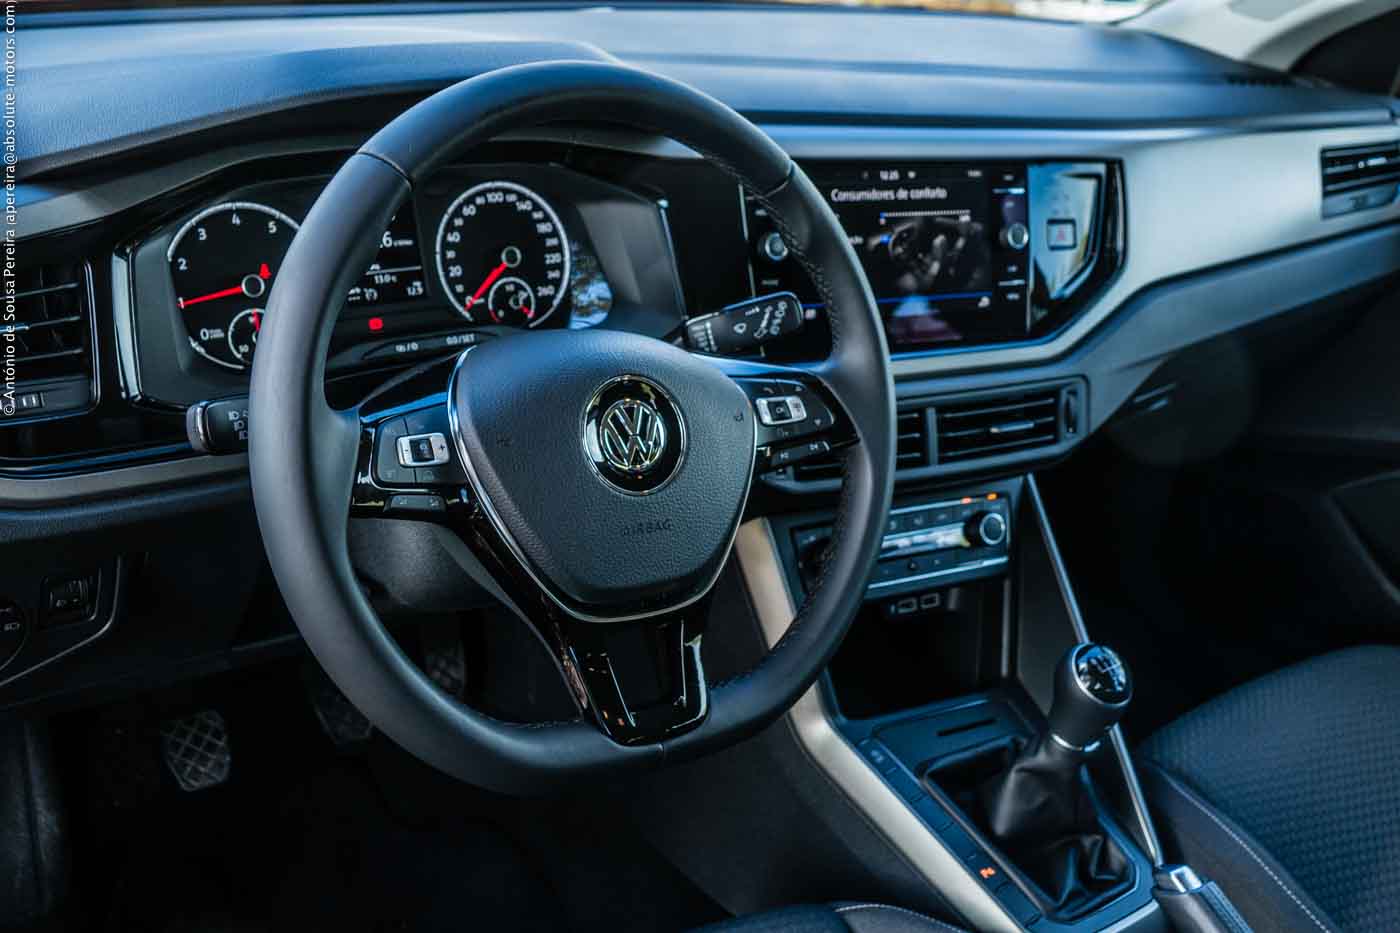 O rigor da montagem e dos acabamentos é um dos elementos decisivos para que o novo VW Polo volto a posicionar-se no topo da classe em termos de qualidade. O equipamento de série devia ser mais generoso, a habitabilidade e a capacidade da mala são refrenciais